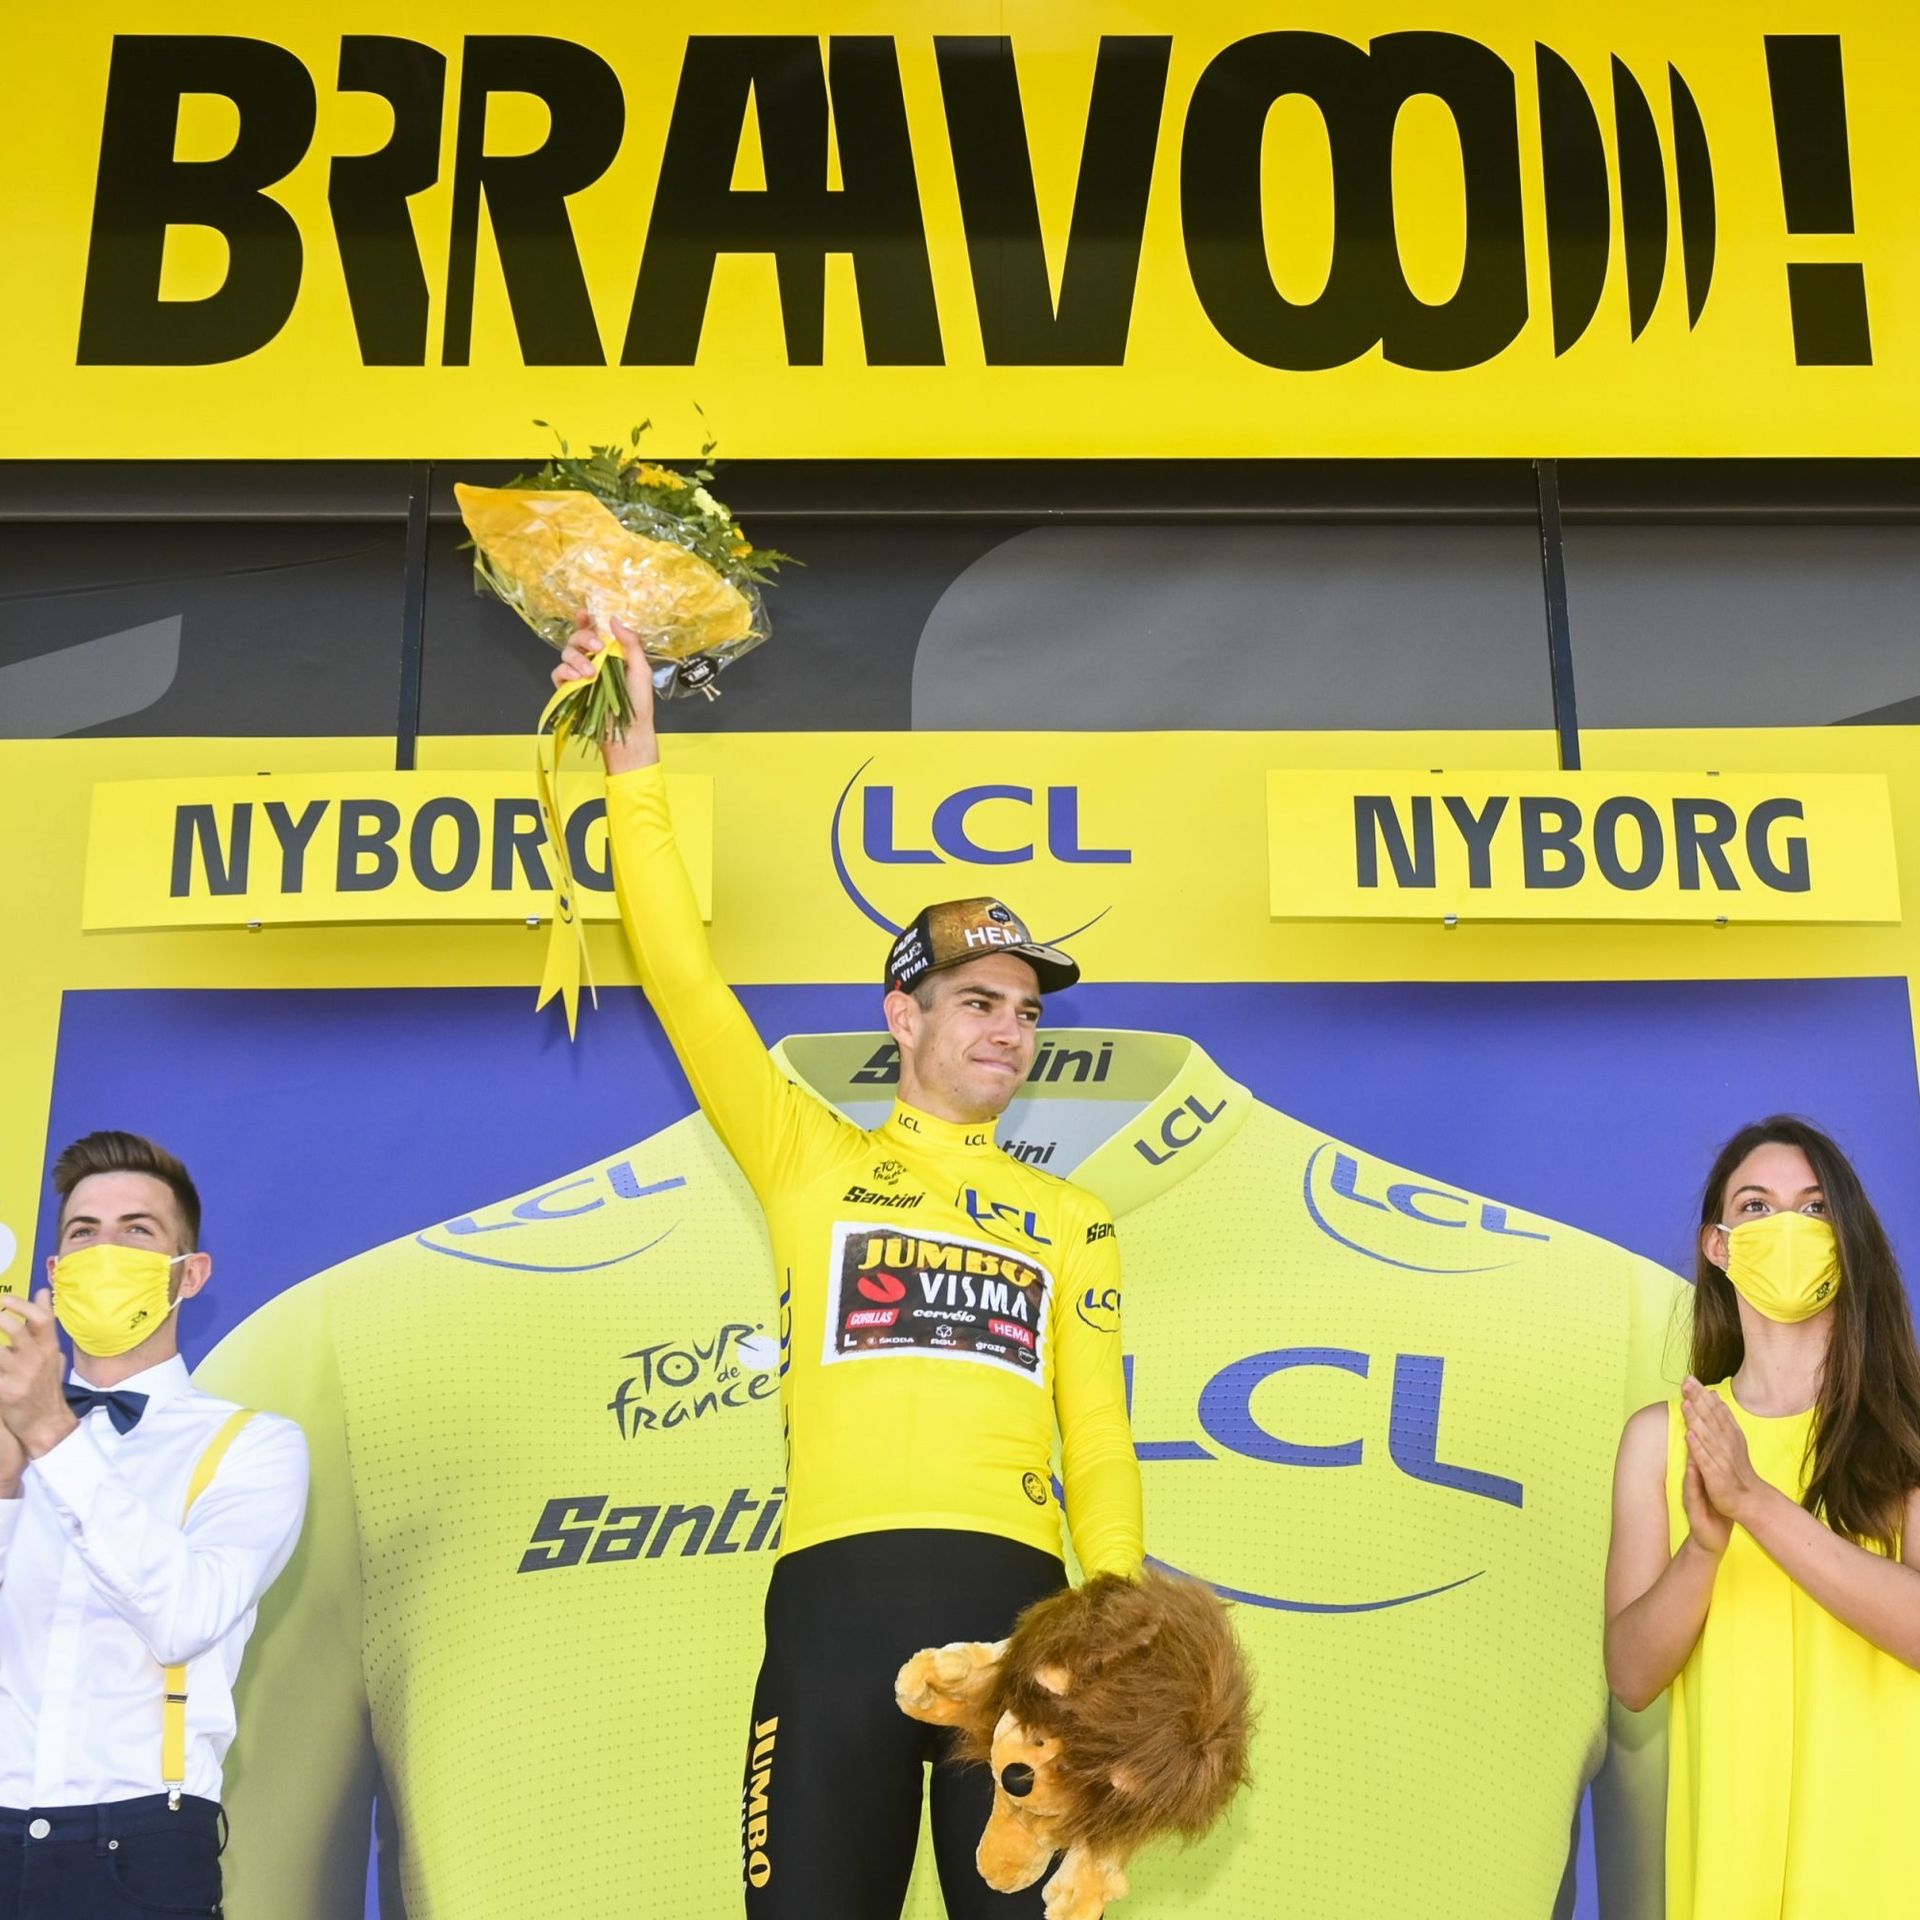 Sourire jaune sur le podium à Nyborg. Il prend le maillot sans s’imposer. Forcément insatisfaisant.